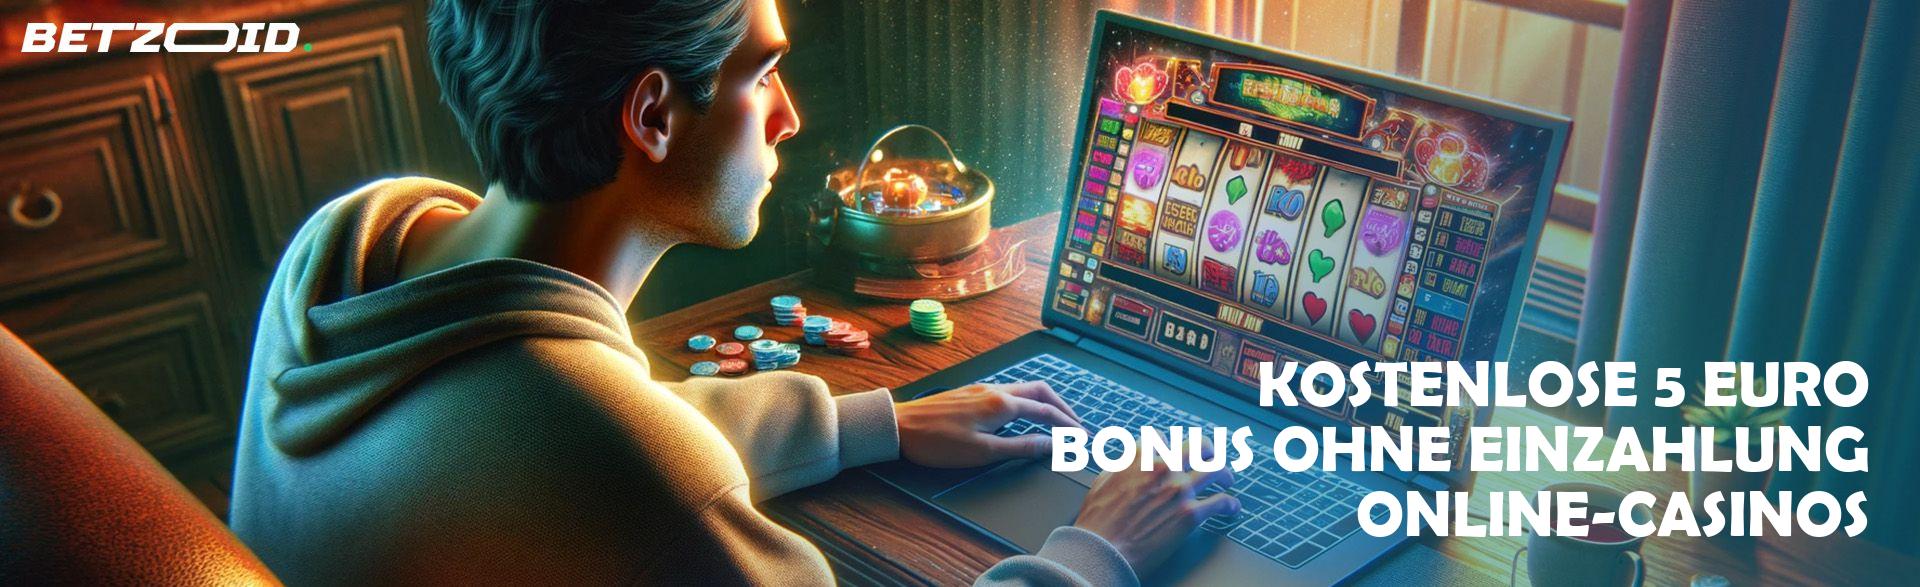 Kostenlose 5 Euro Bonus ohne Einzahlung Online-Casinos.